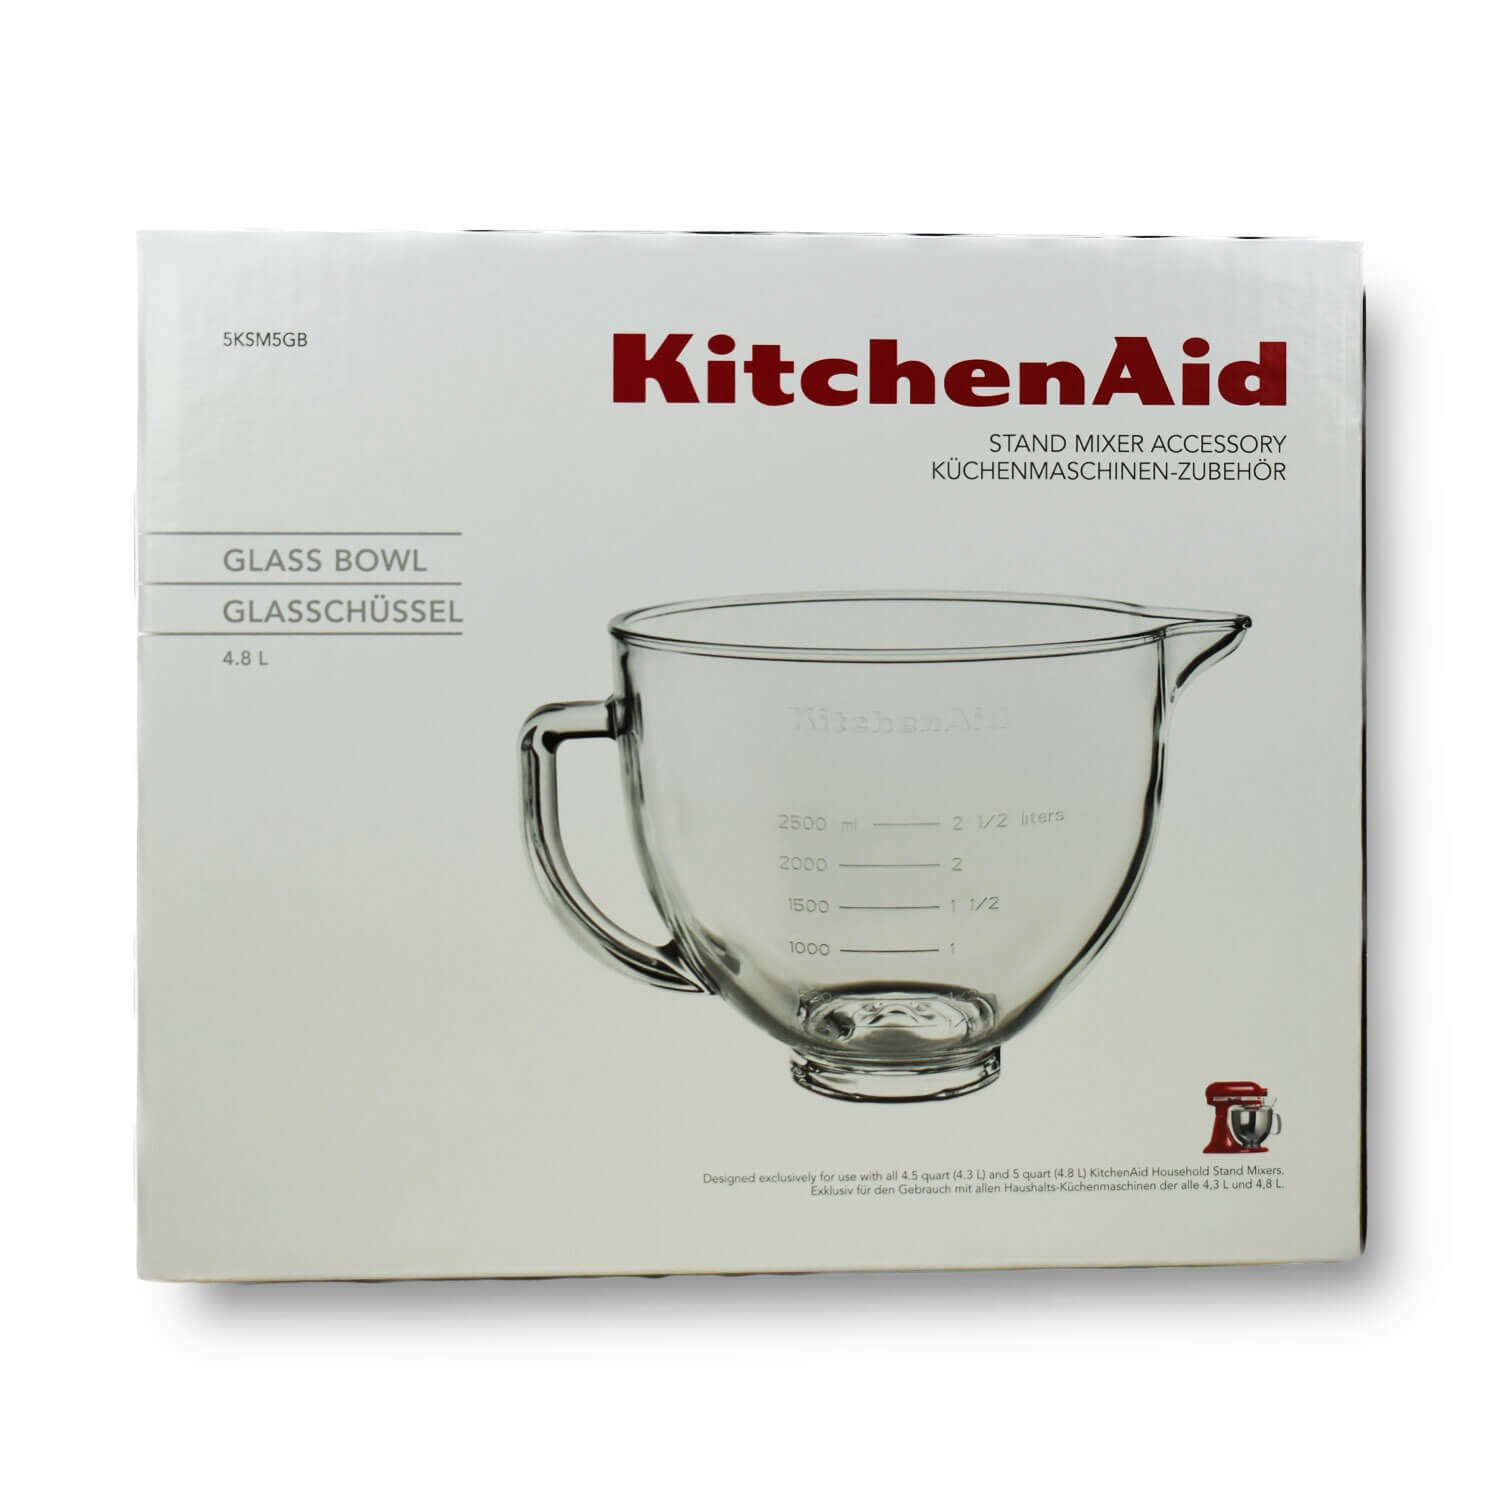 Stand mixer bowl 4,83 l 5KSM5GB, glass, KitchenAid 